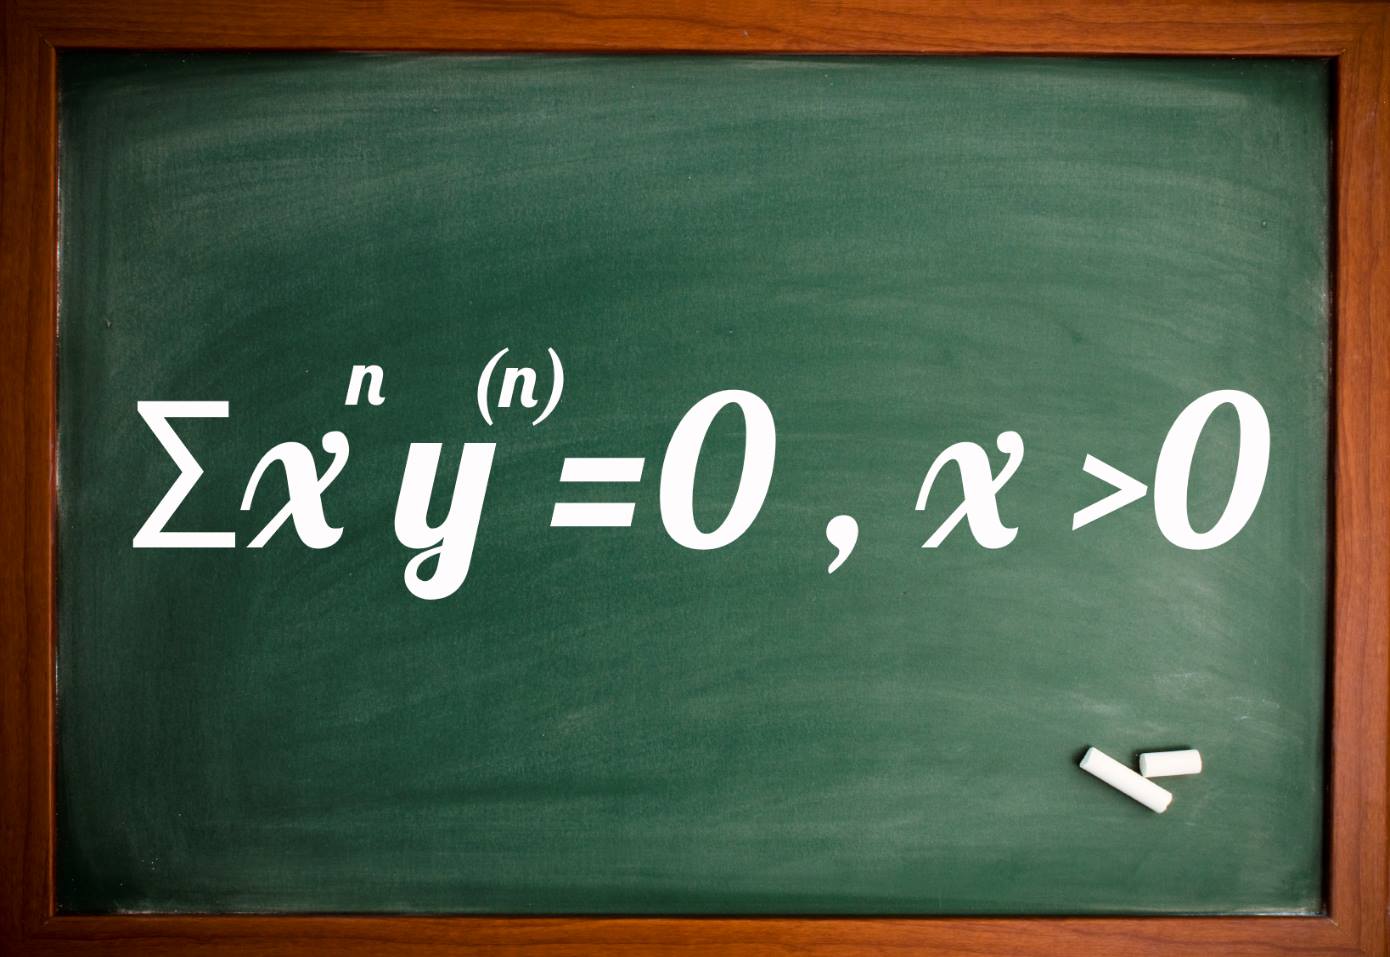 معادله دیفرانسیل اویلر مراتب بالاتر